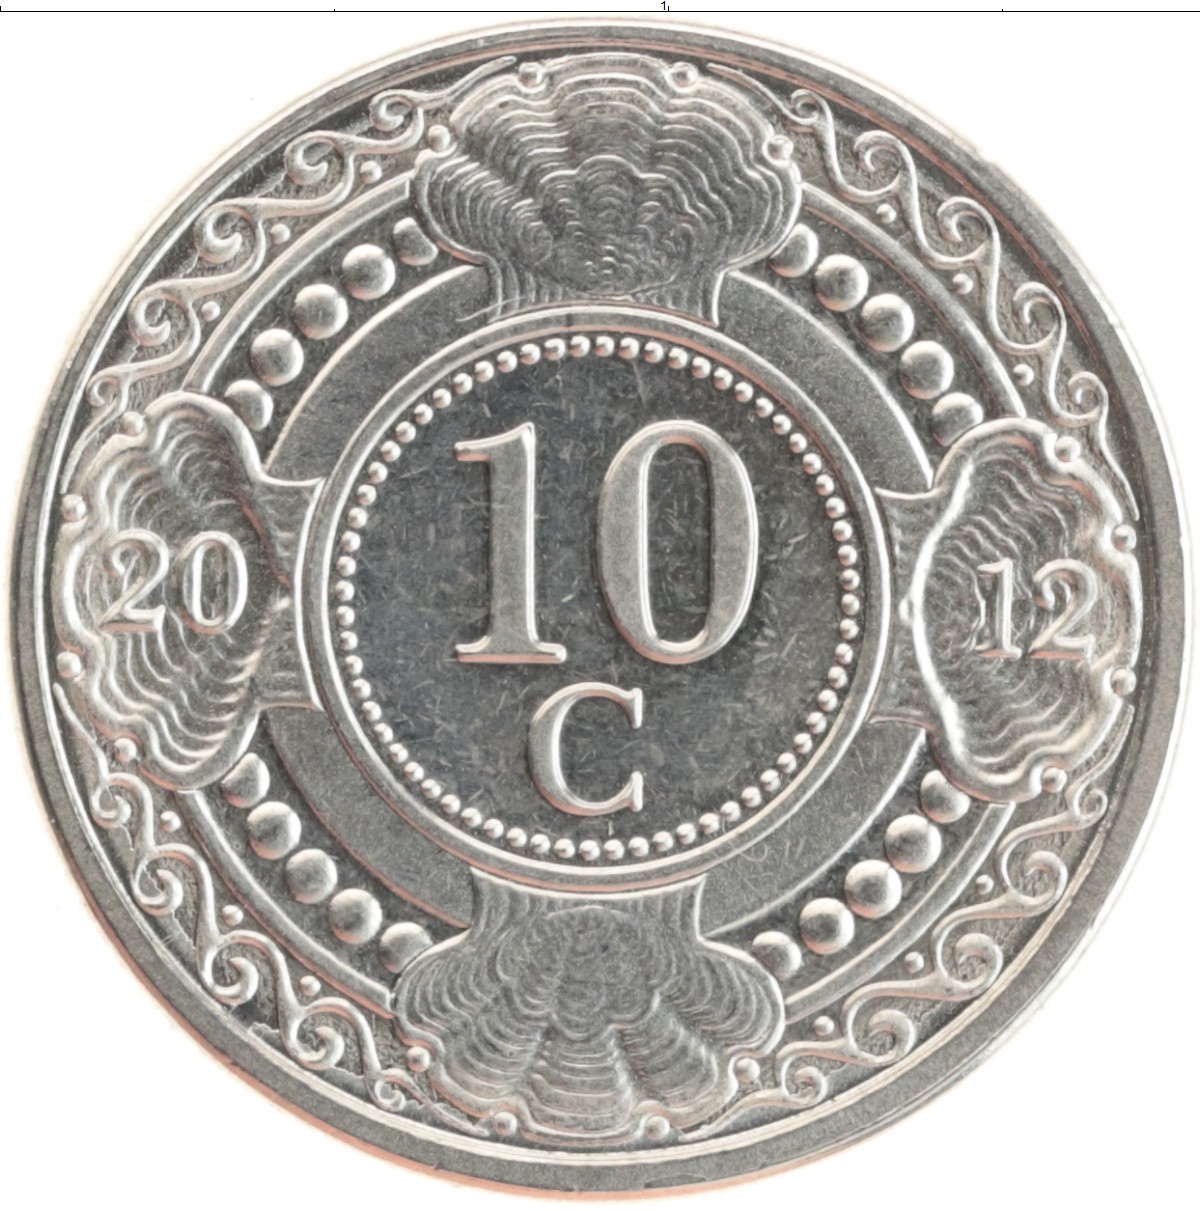 20 от 70 рублей. 10 Центов 2006 года. Монета 10 центов 2006 года. Монета 10 центов редкая. Монеты Нидерландские Антильские острова 10 центов 2014.